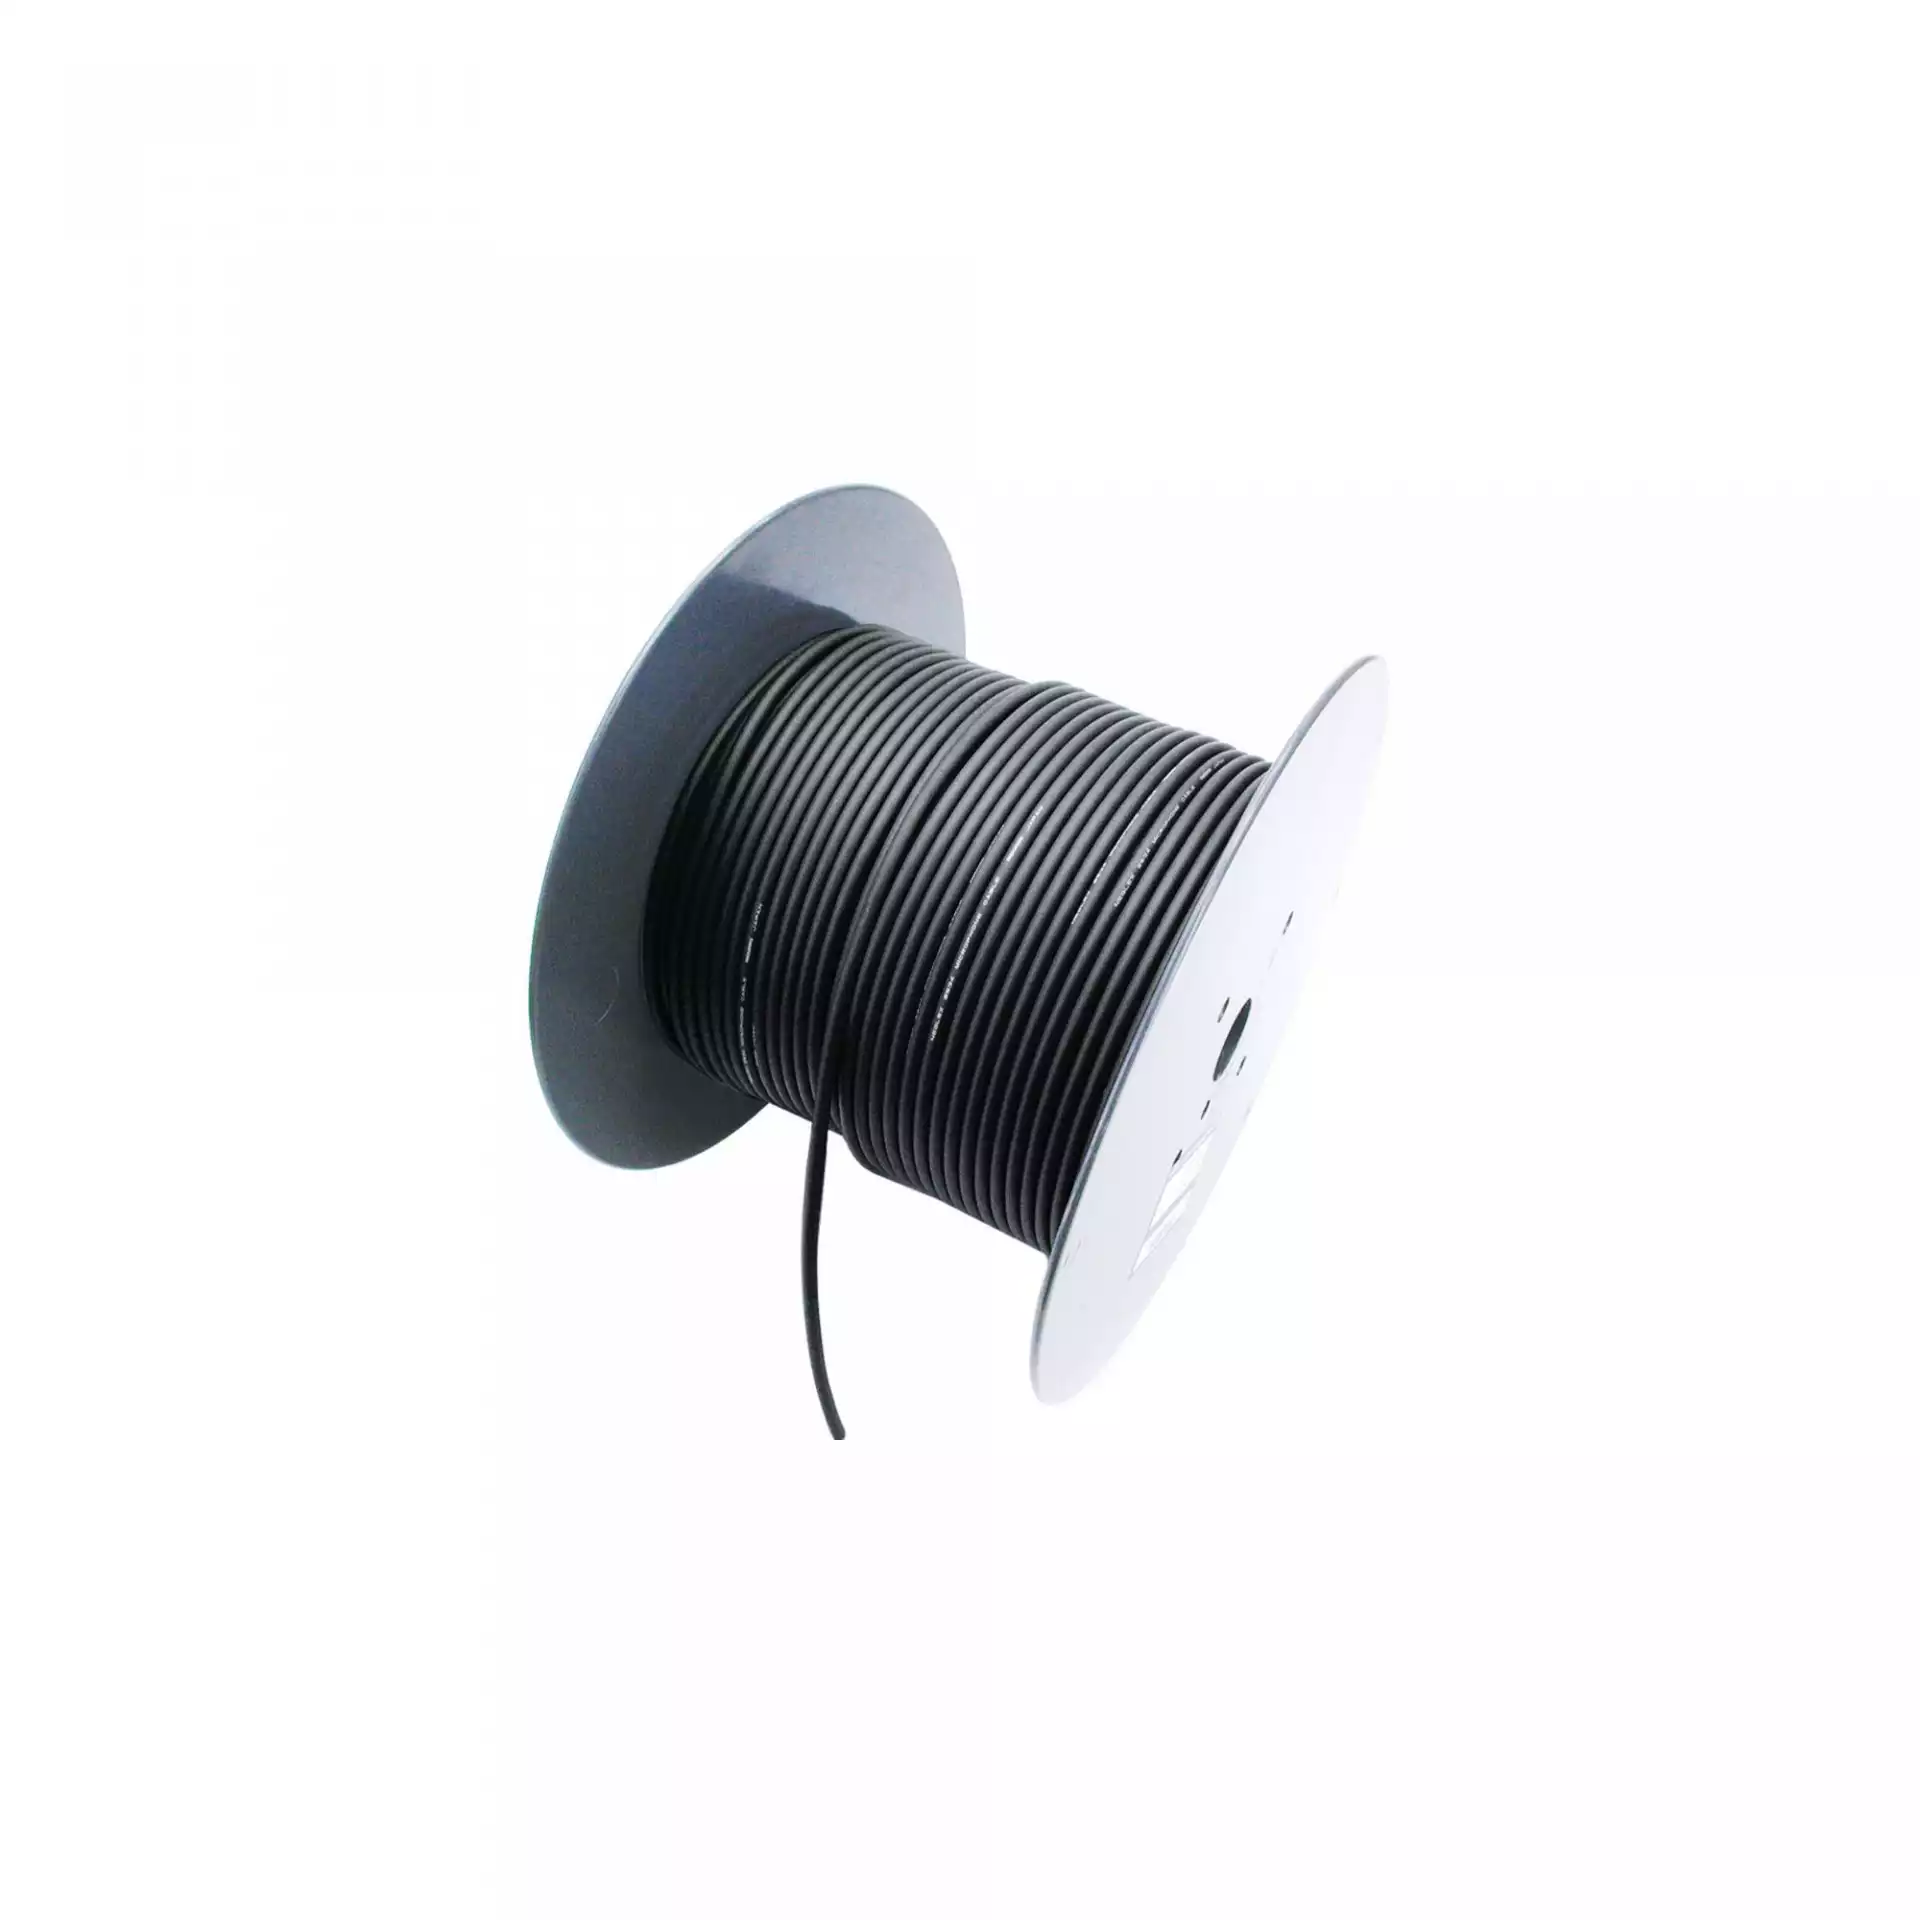 Mogami 3080 Digital Audio Cable Black